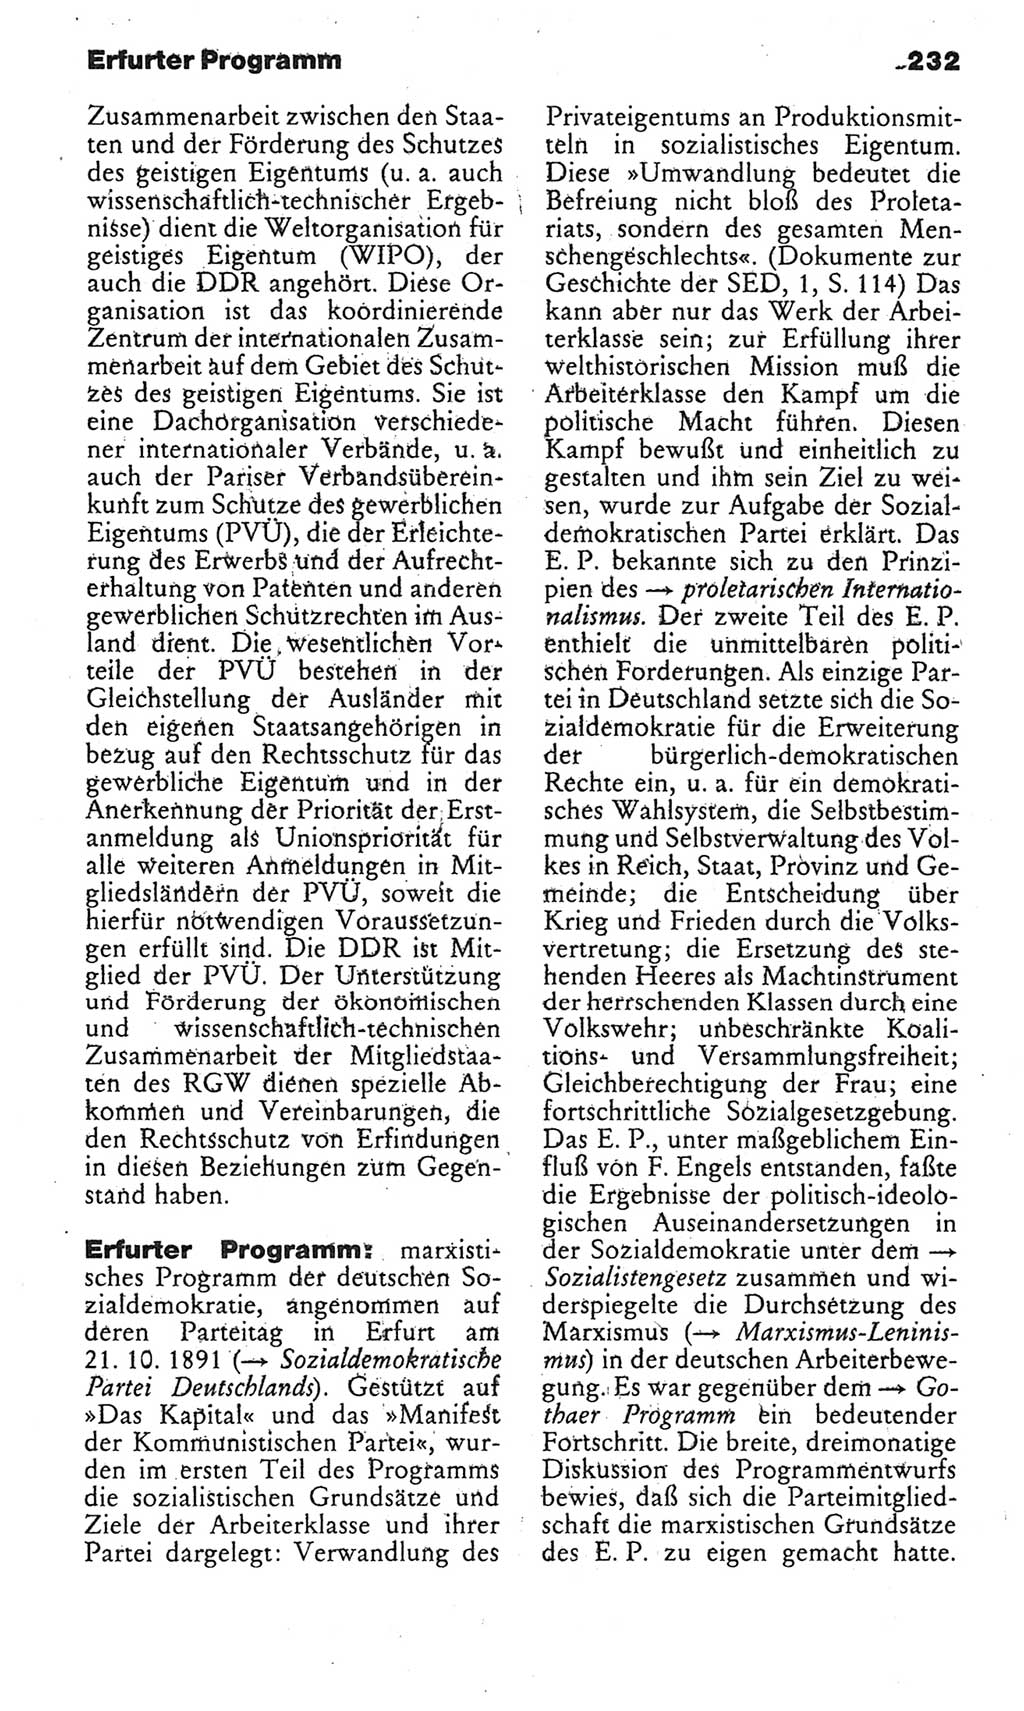 Kleines politisches Wörterbuch [Deutsche Demokratische Republik (DDR)] 1985, Seite 232 (Kl. pol. Wb. DDR 1985, S. 232)